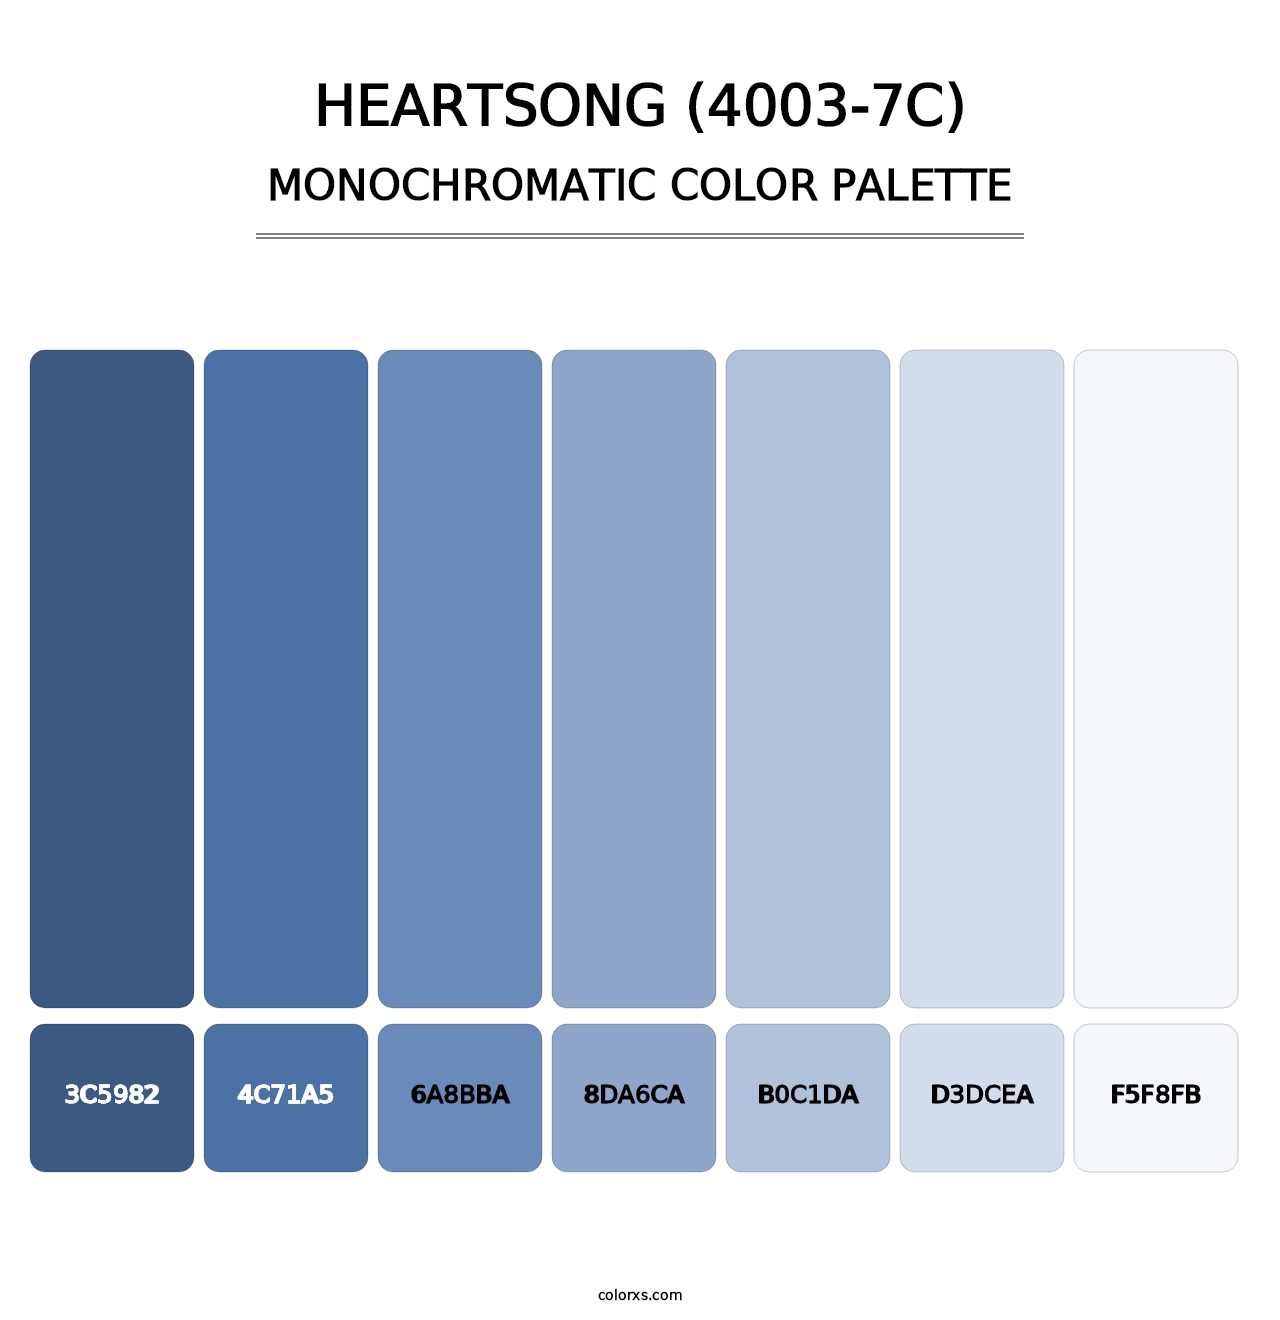 Heartsong (4003-7C) - Monochromatic Color Palette